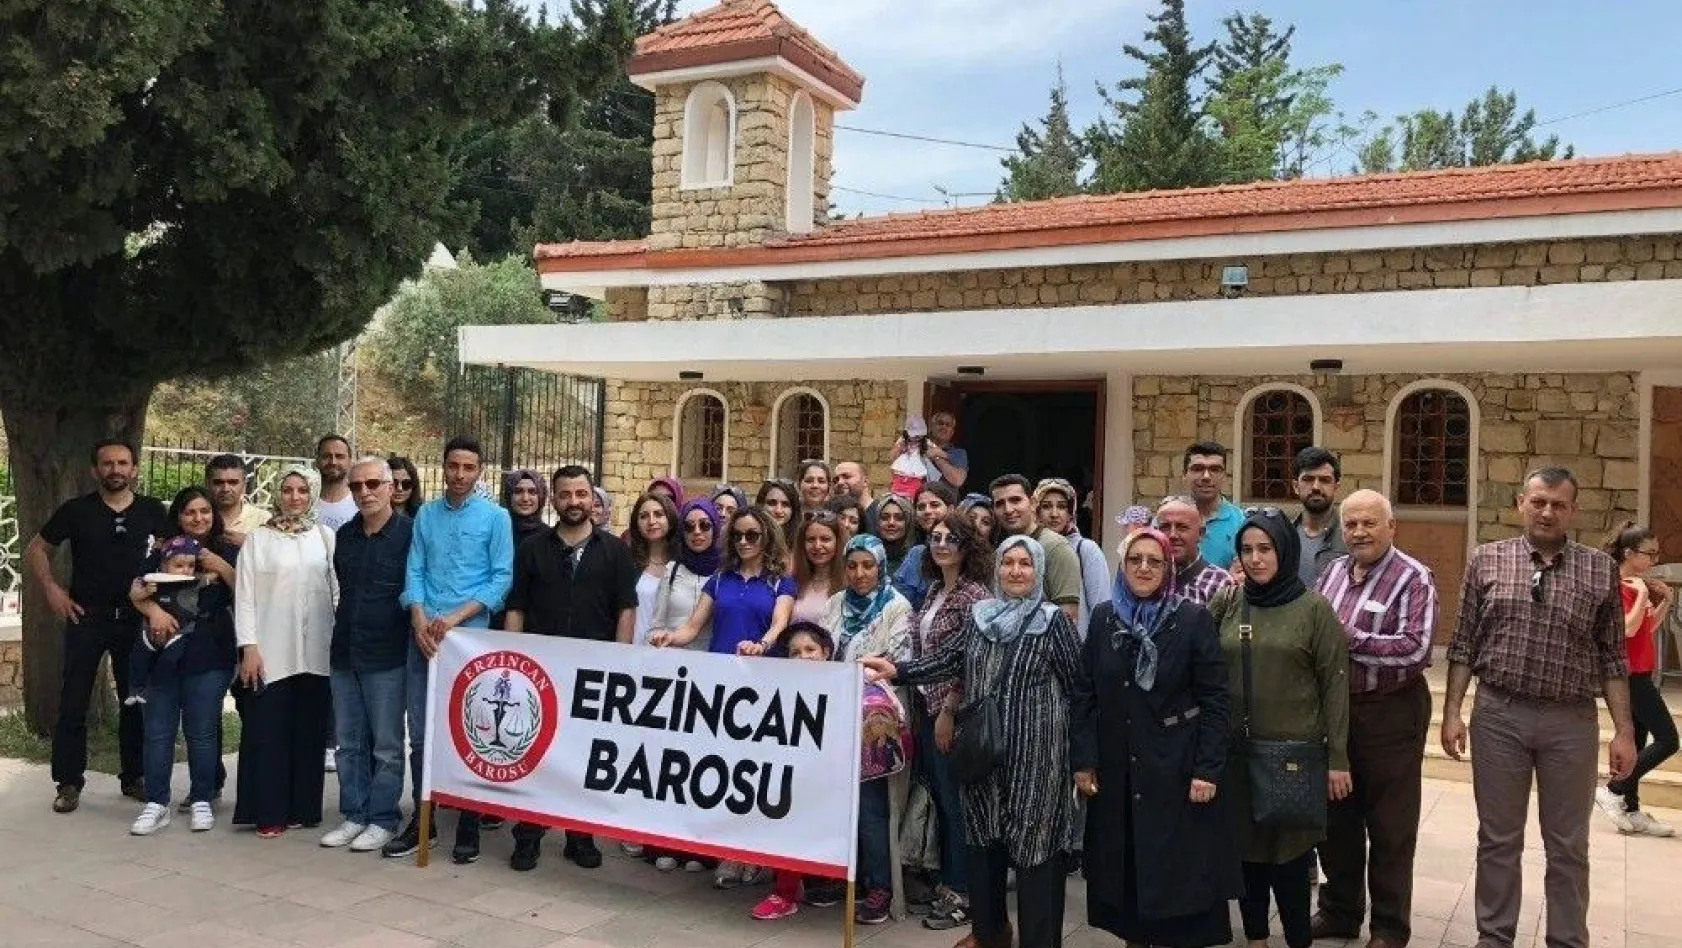 Erzincan Barosu'ndan Sosyal ve Kültürel Etkinlikler
